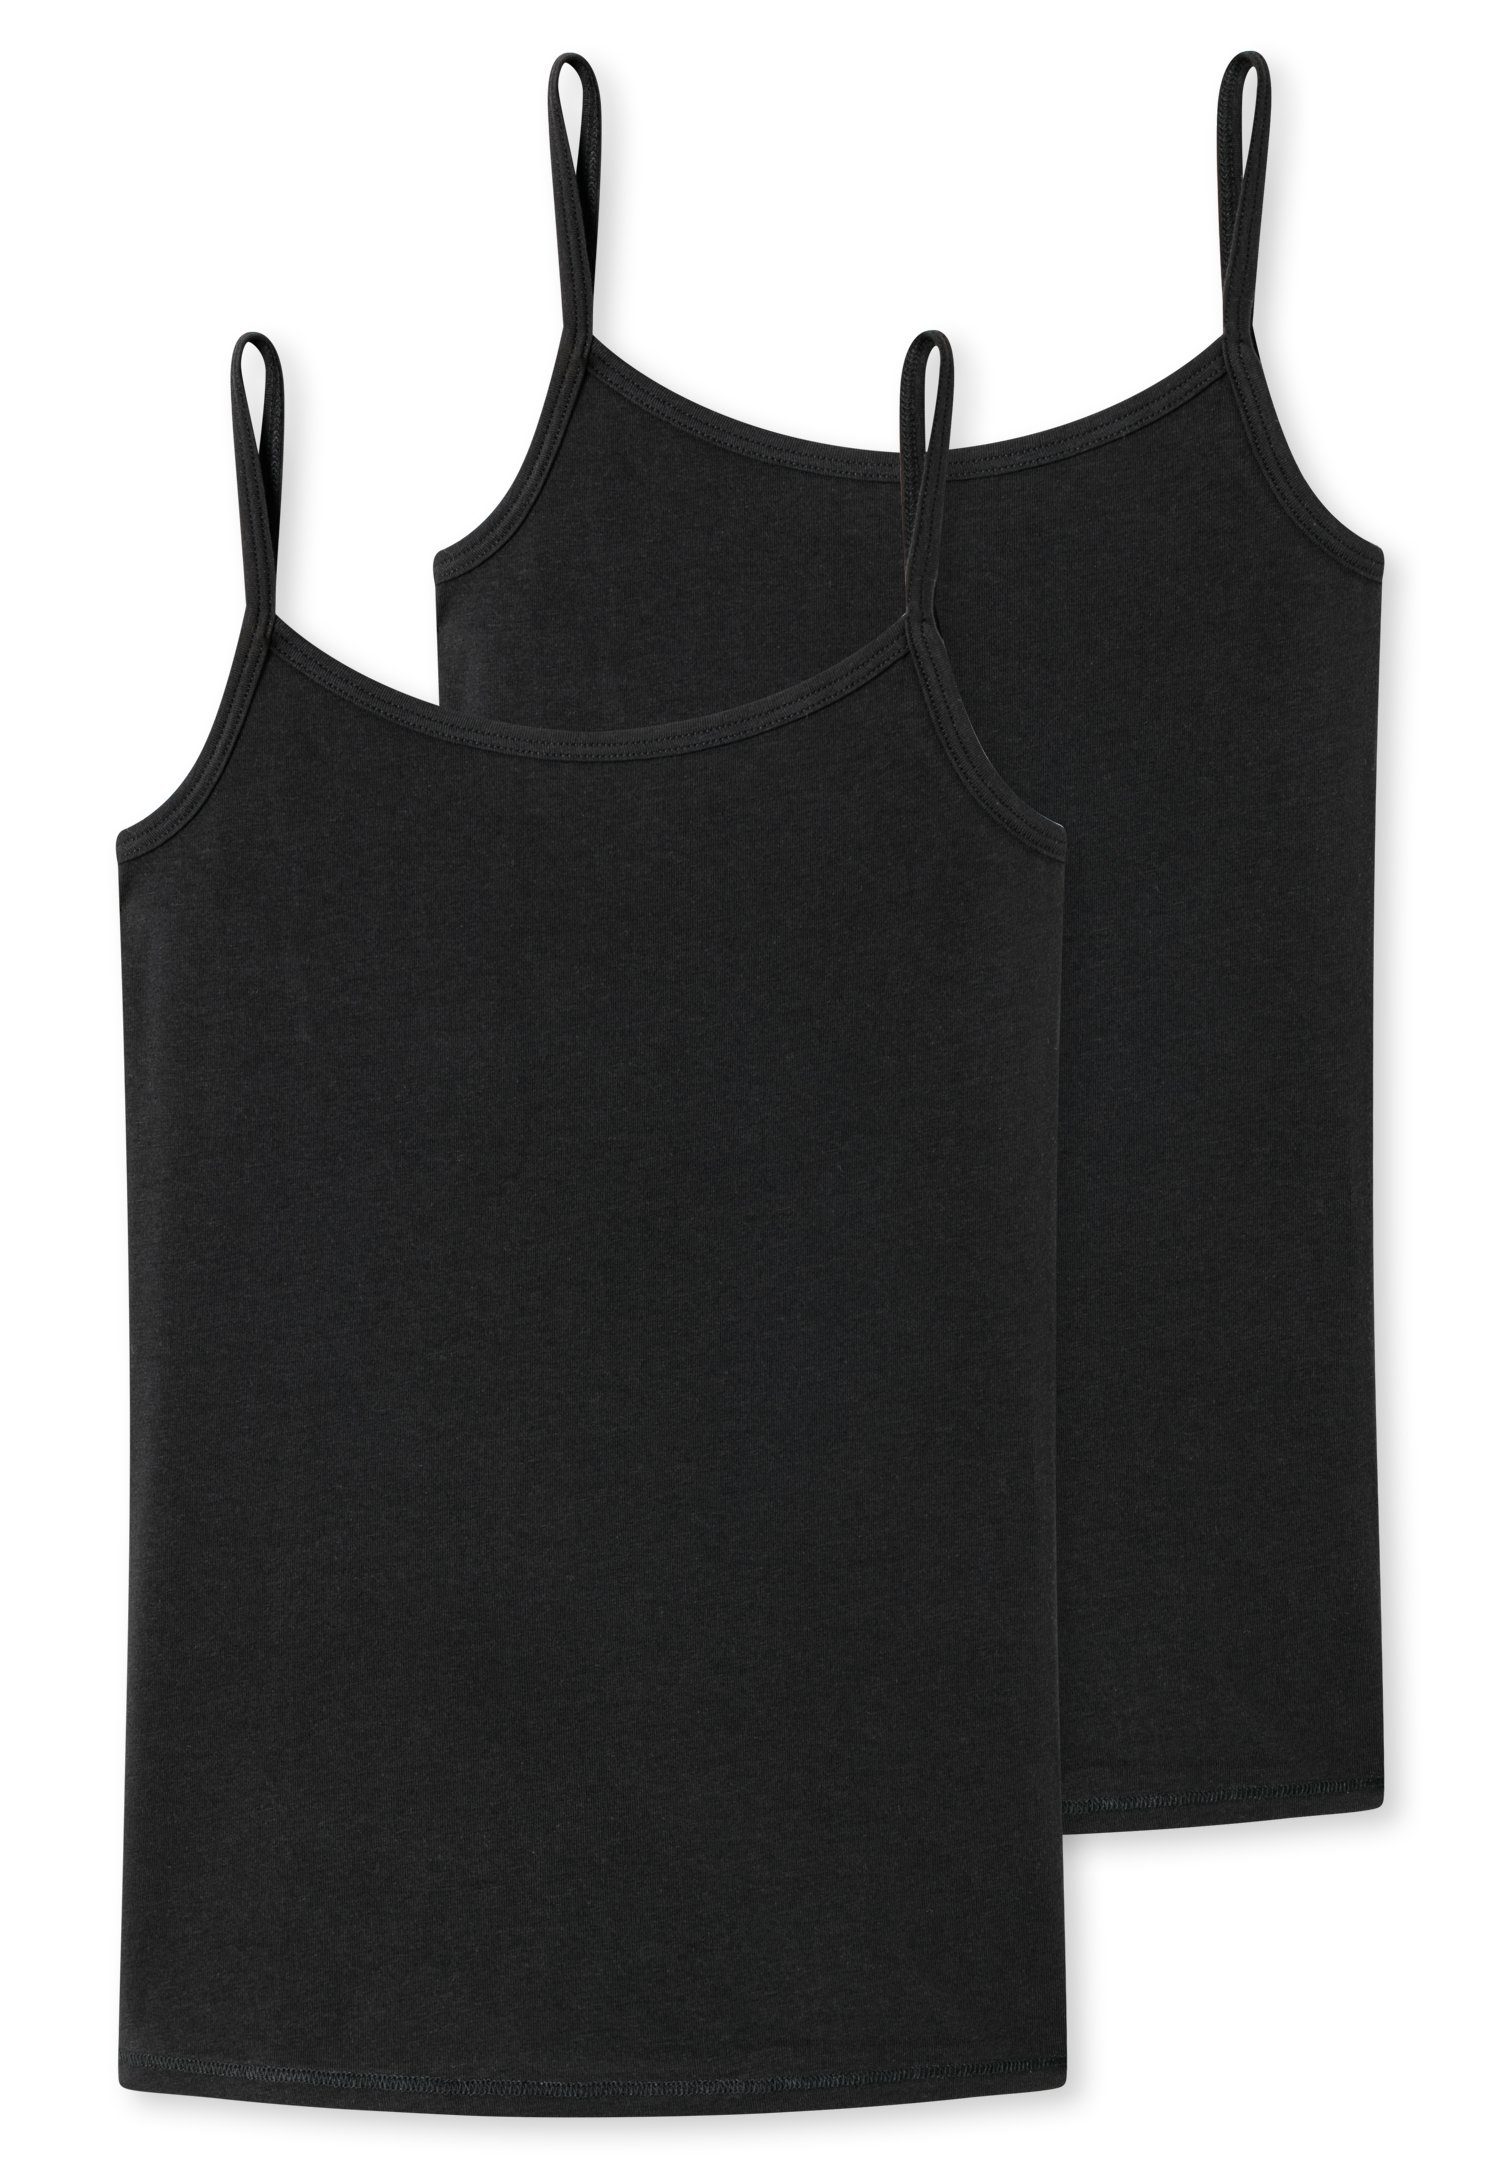 Unterhemd schwarz Trägern schmalen Schiesser (2er-Pack) mit